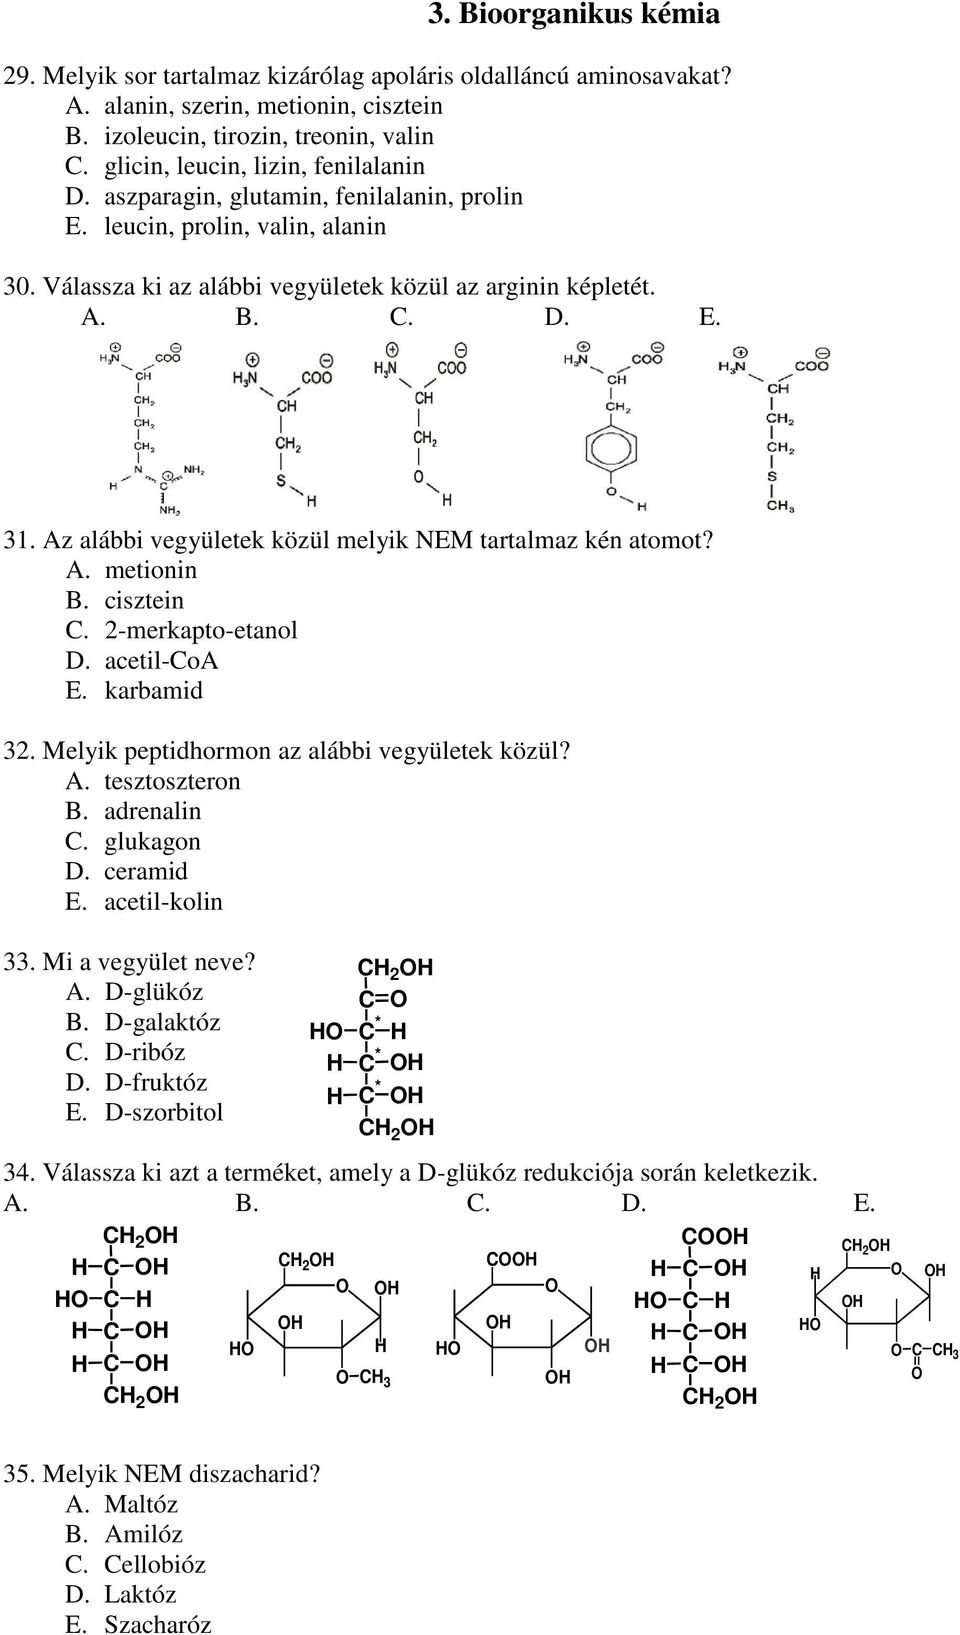 Az alábbi vegyületek közül melyik EM tartalmaz kén atomot? A. metionin B. cisztein C. 2-merkapto-etanol D. acetil-coa E. karbamid 32. Melyik peptidhormon az alábbi vegyületek közül? A. tesztoszteron B.